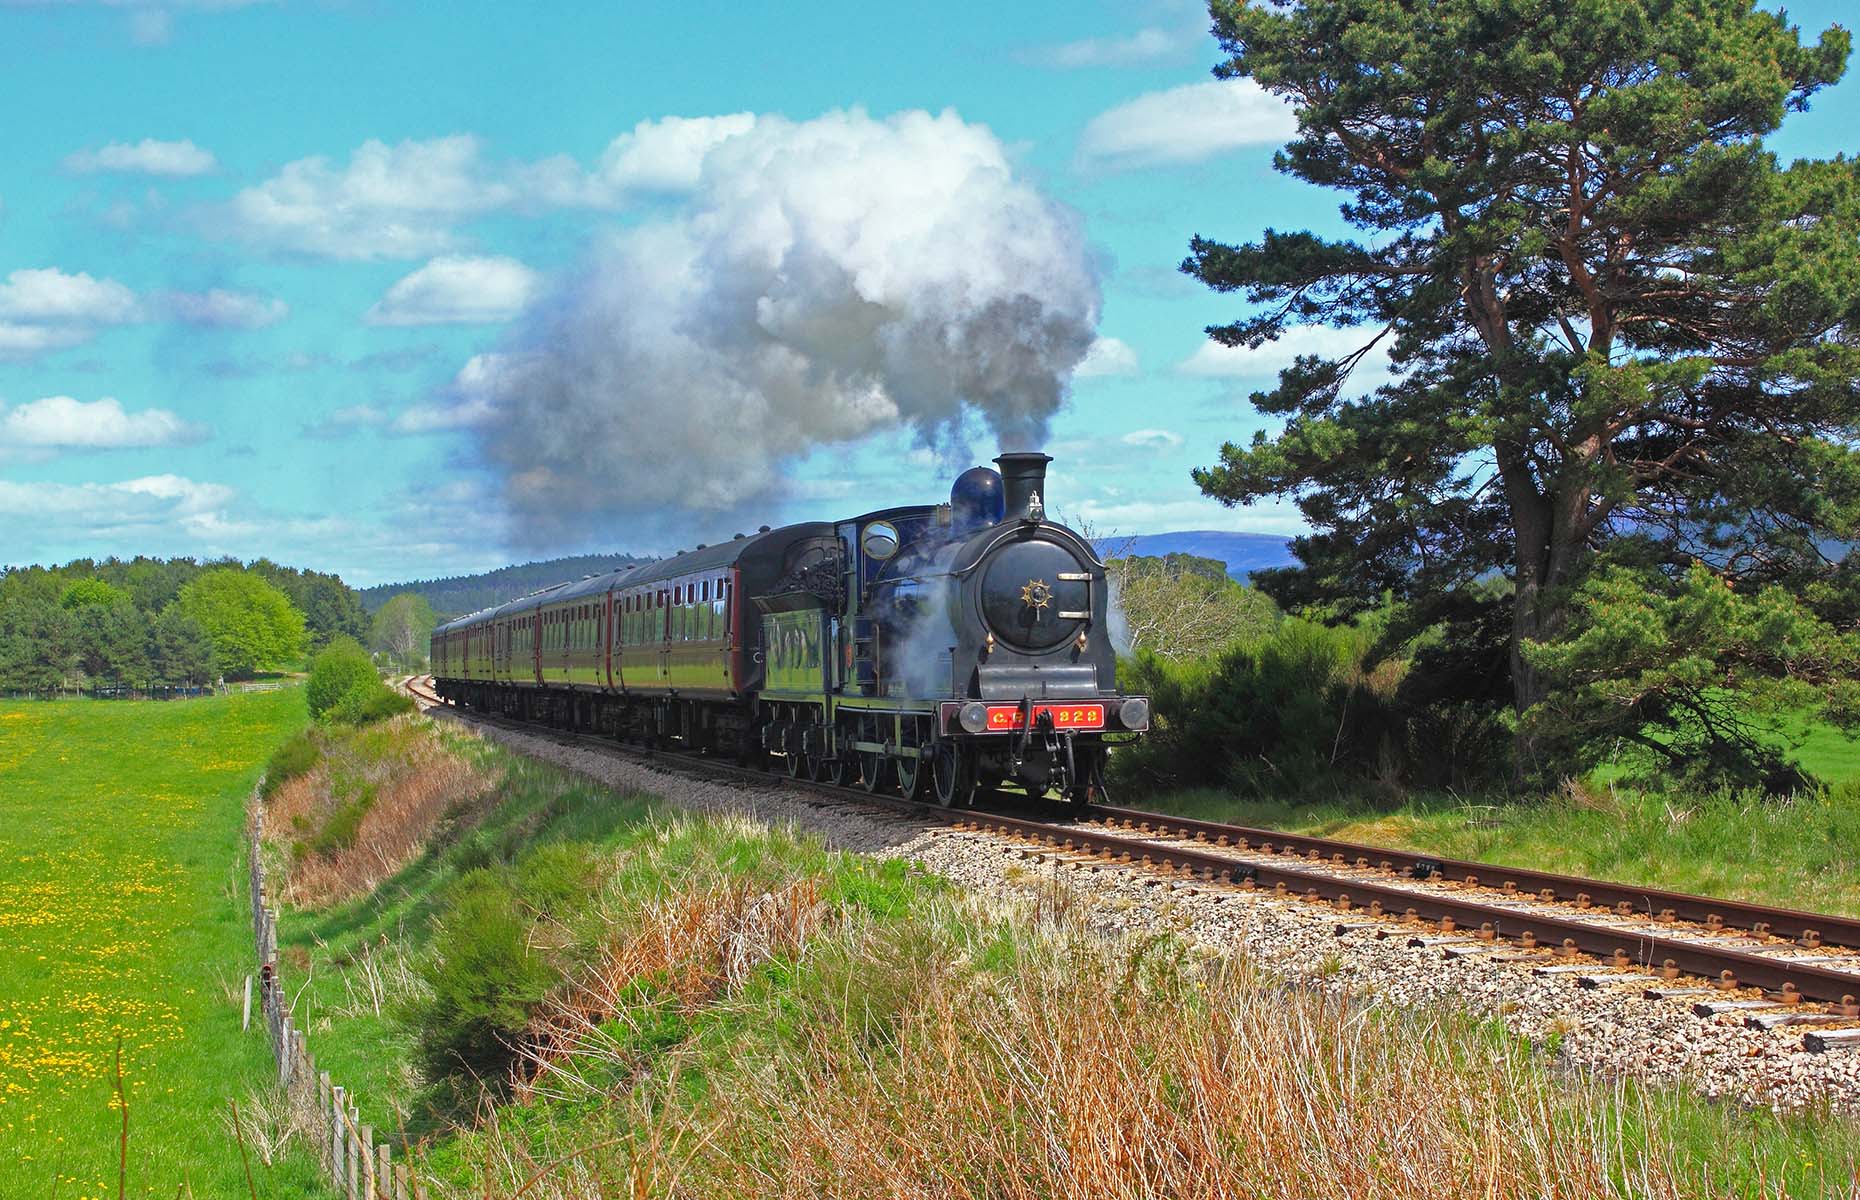 Strathspey Steam Railway (Image: Sandy Harvey/Shutterstock)